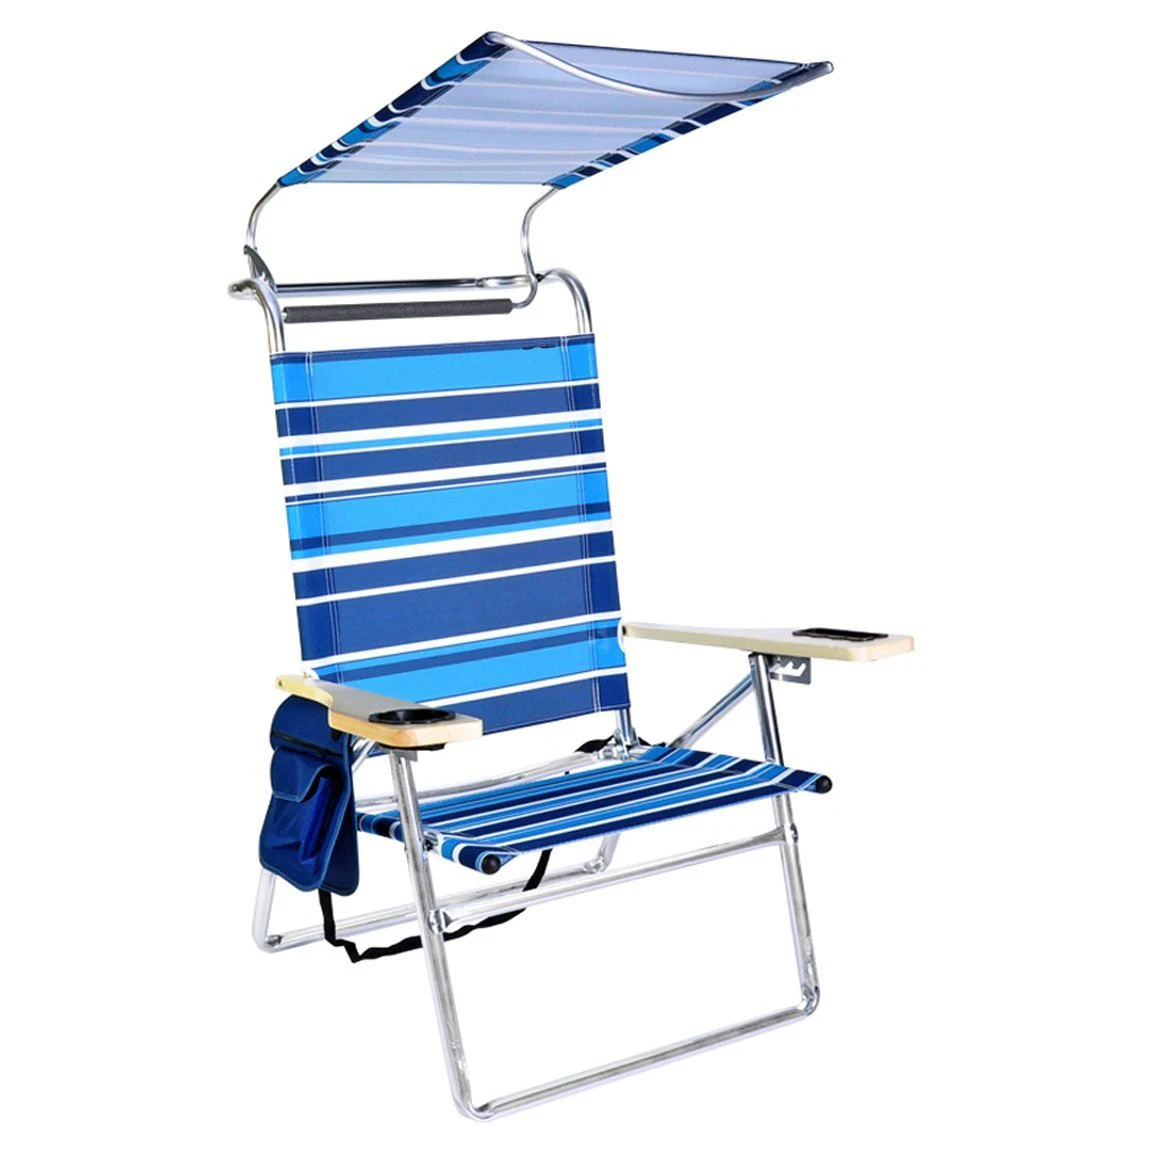 Minimalist Beach Chair Sun Shade Canopy with Simple Decor